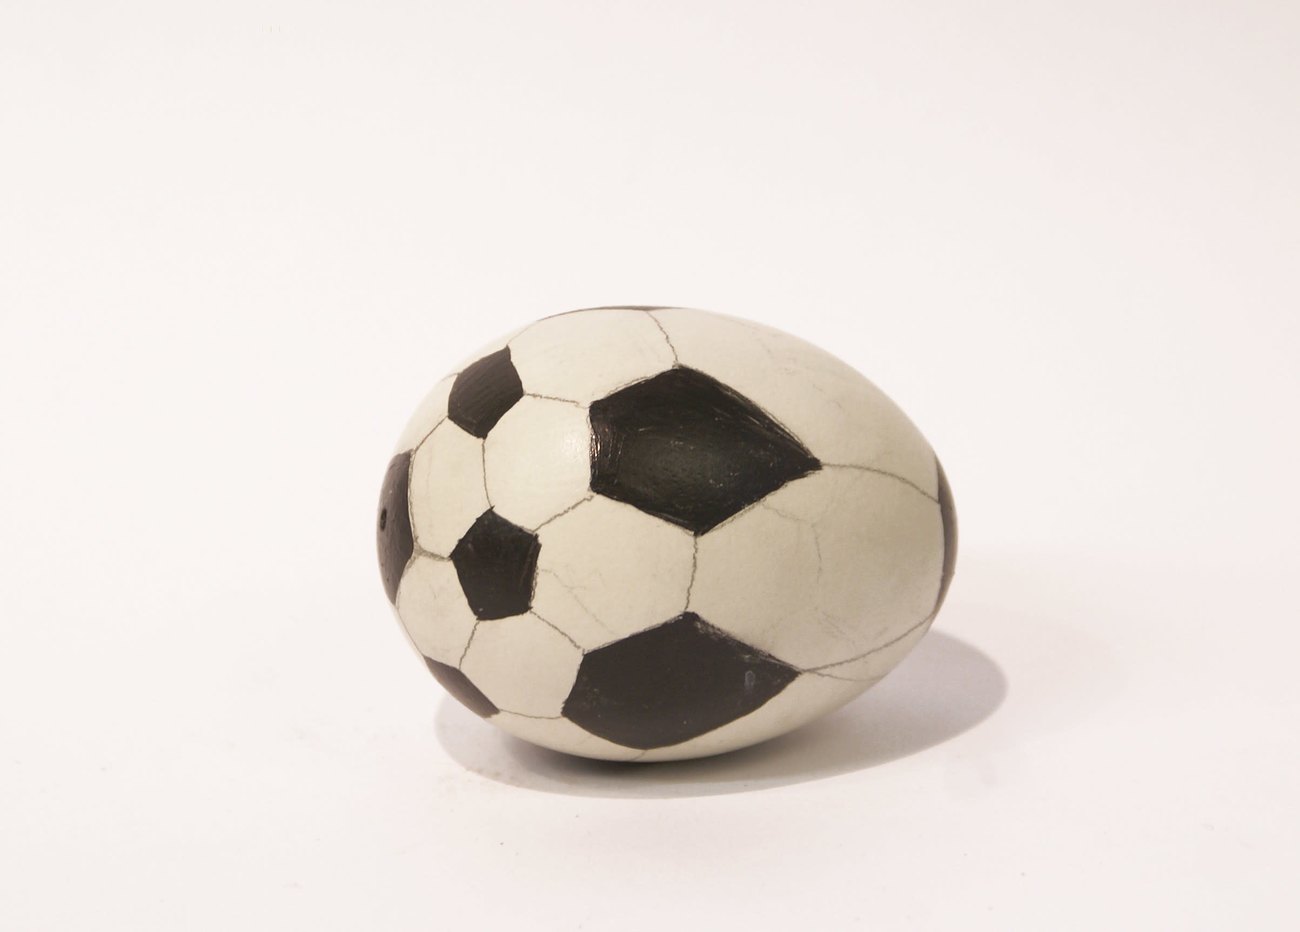 Study for Football Egg